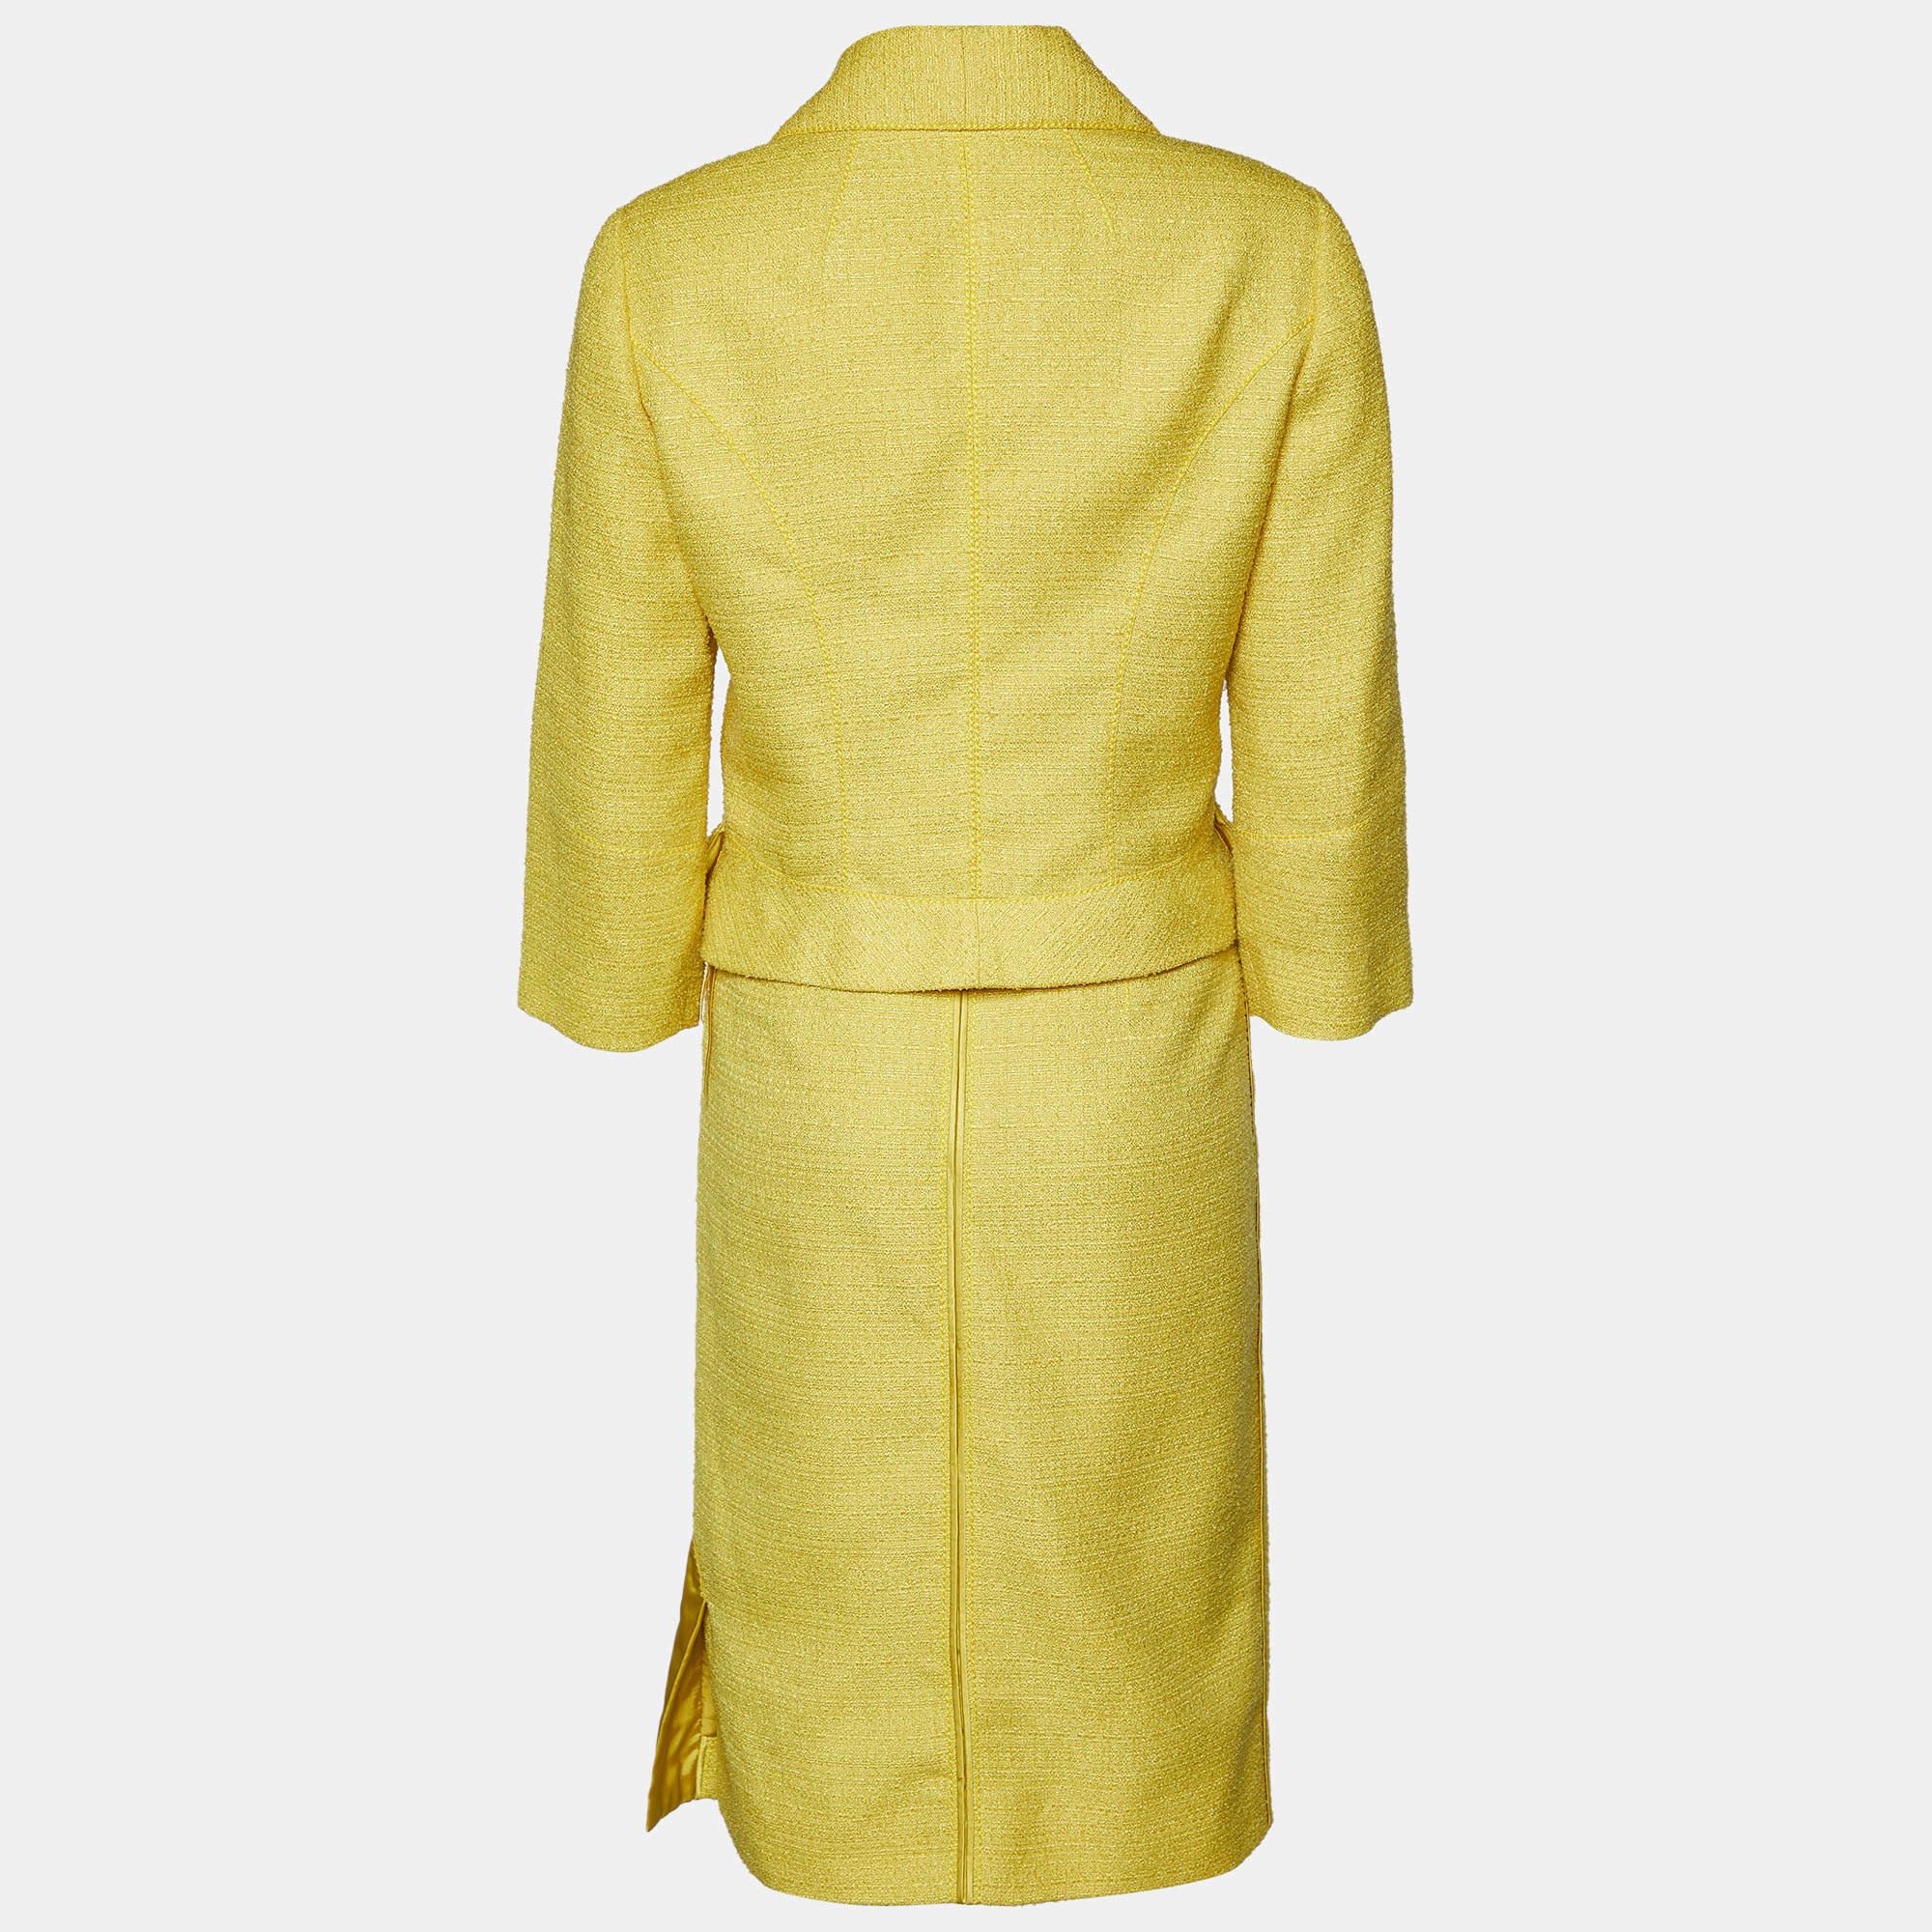 L'ensemble blazer et jupe de Louis Vuitton se décline en tweed jaune. Le blazer est doté de boutons floraux, de manches longues et de poches sur le devant. Associez l'ensemble à des escarpins élégants et à un sac élégant.

Comprend : Blazer et jupe